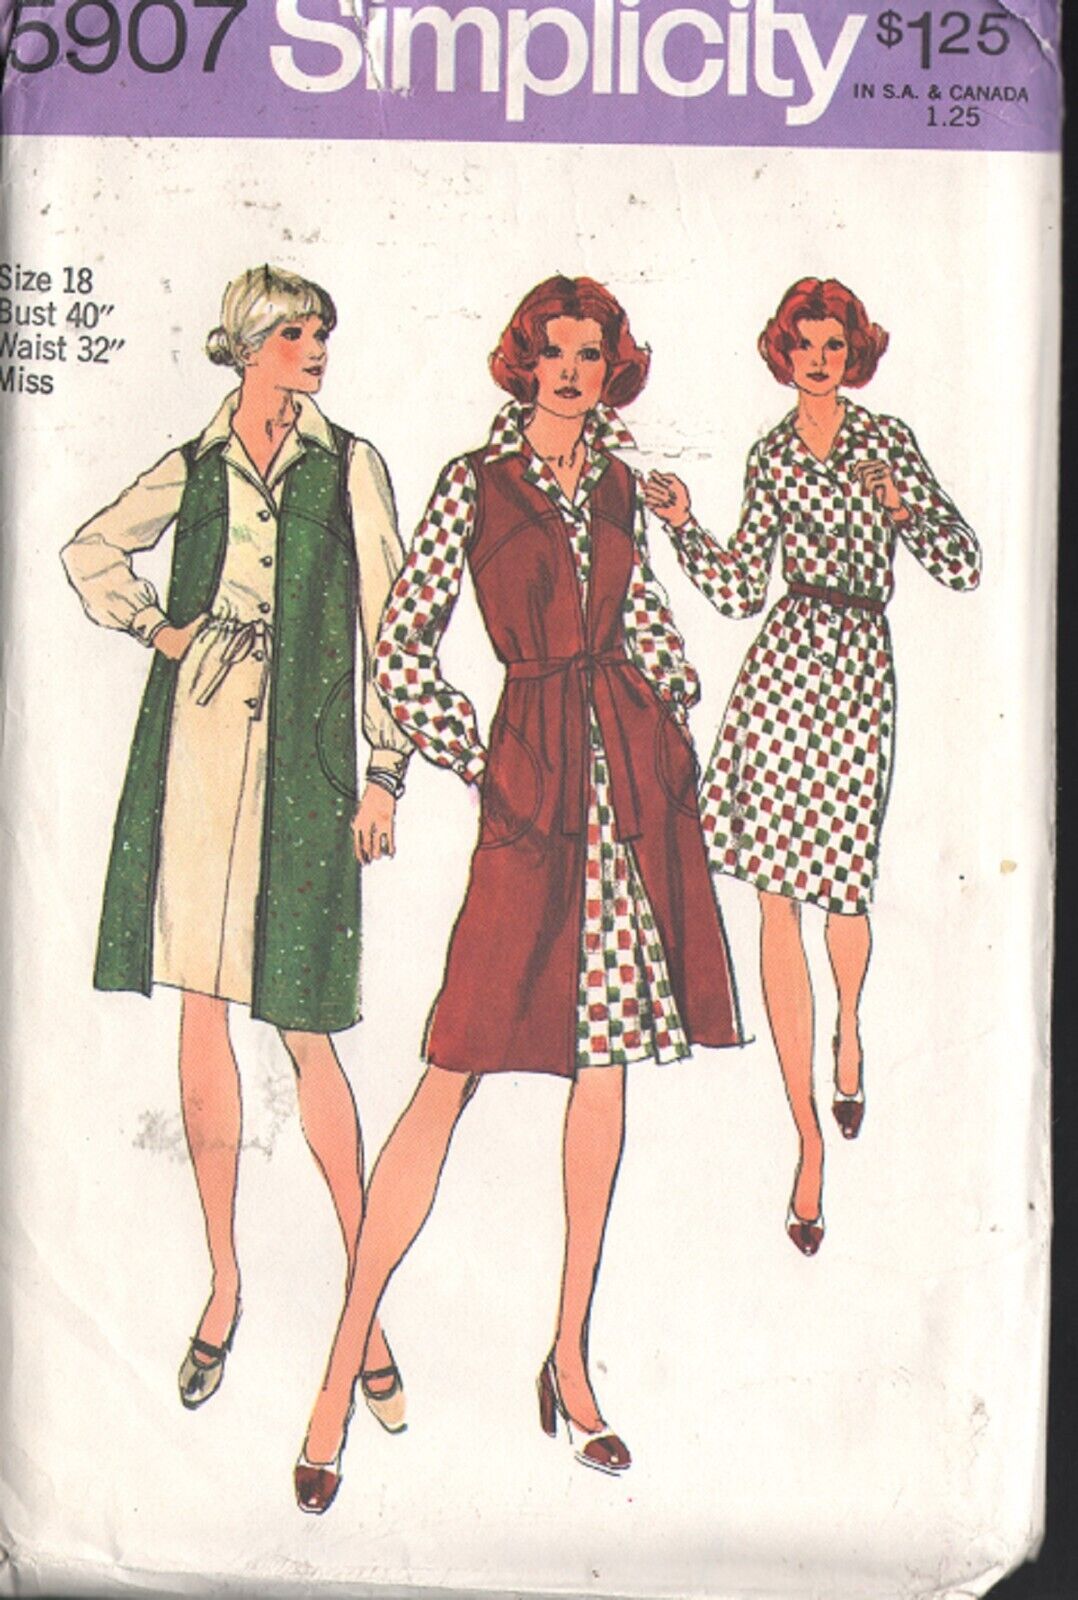 Vintage Simplicity 5907 Sewing Pattern Dress & Vest Size 18 uncut